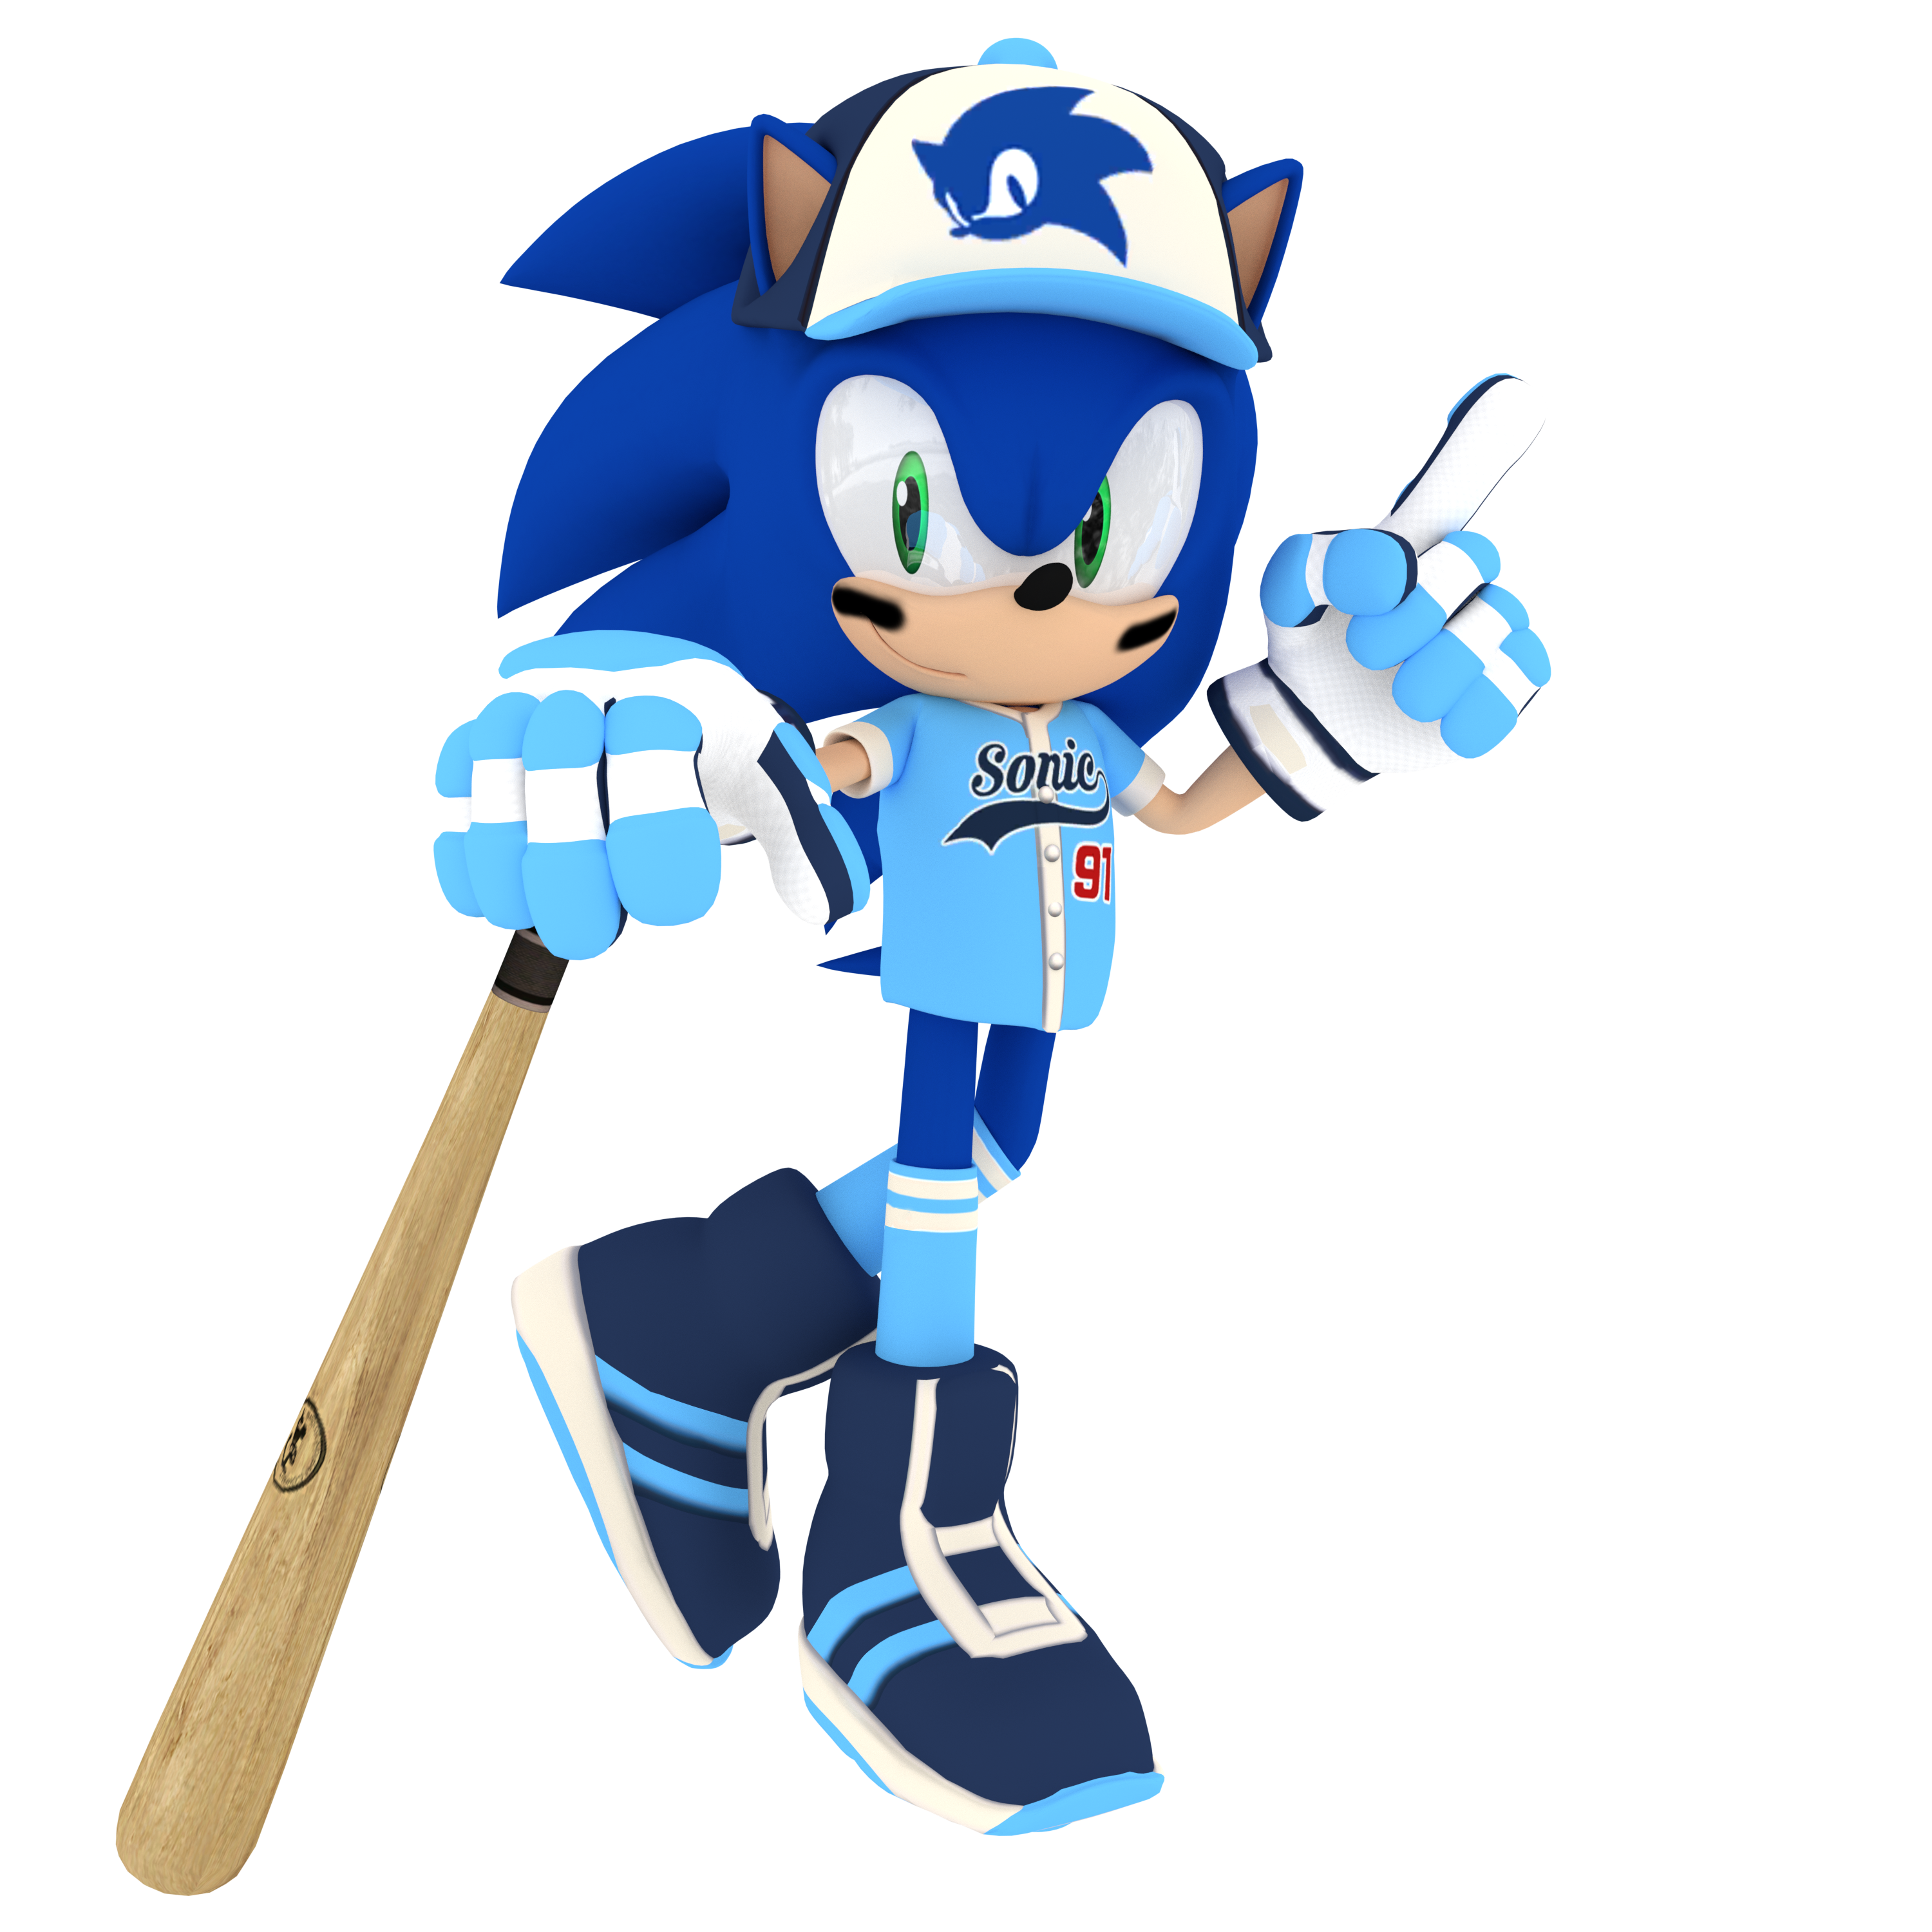 Sonic Playing Baseball Wallpapers